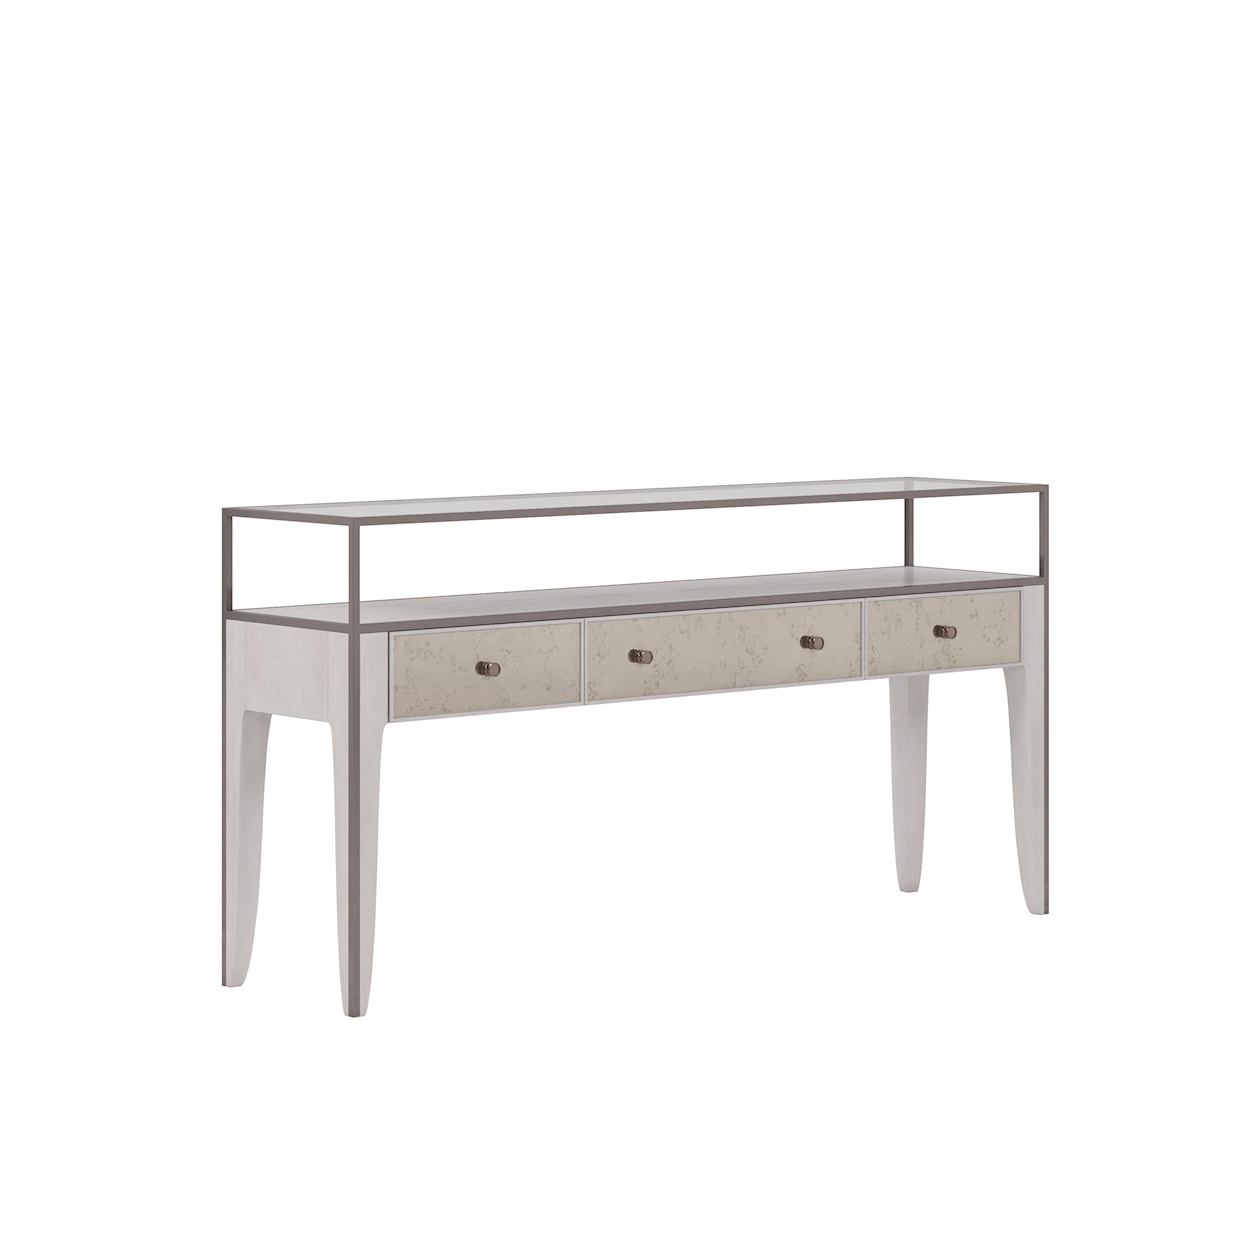 A.R.T. Furniture Inc Mezzanine Console Table